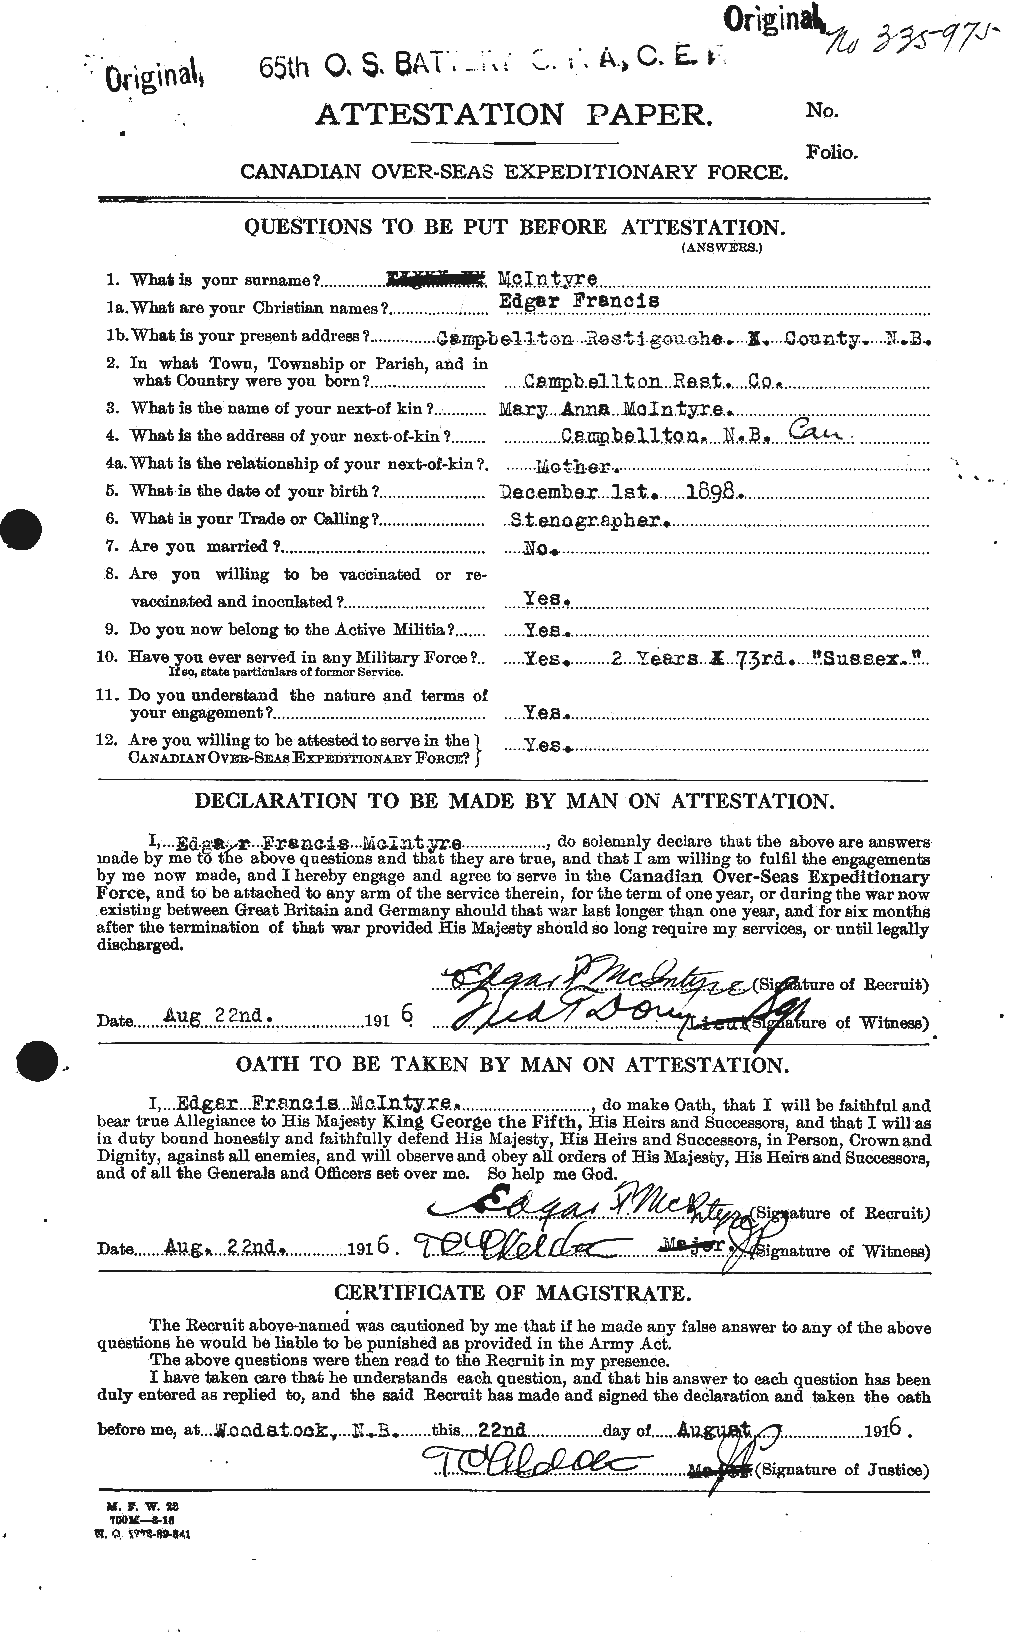 Dossiers du Personnel de la Première Guerre mondiale - CEC 527348a